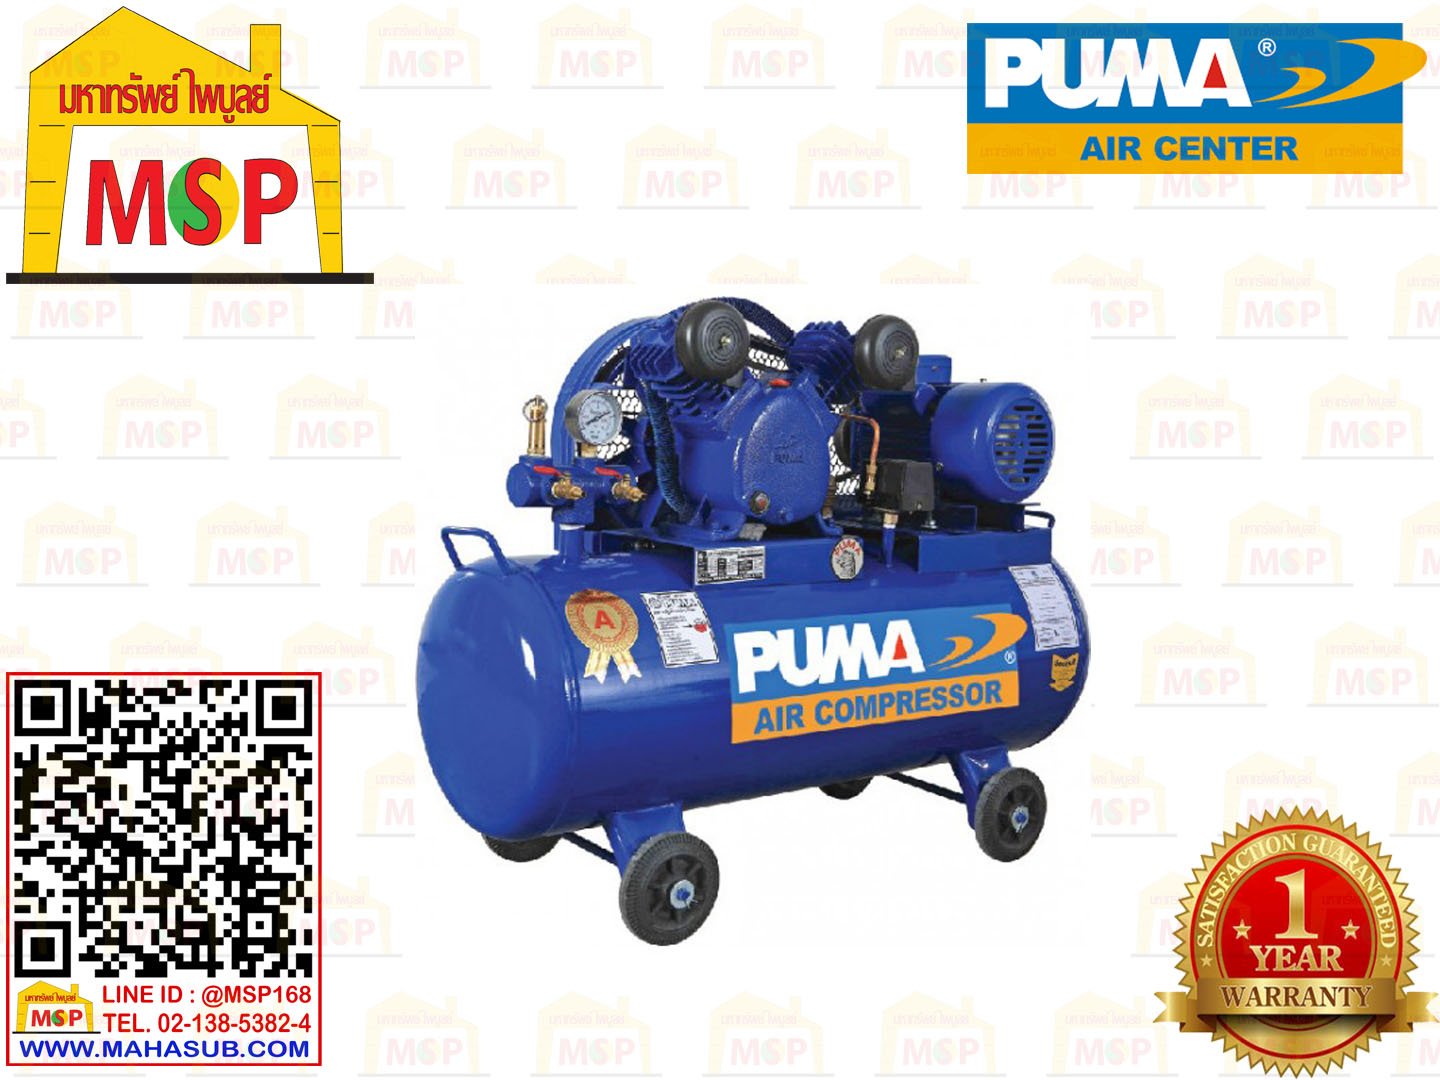 Puma เฉพาะ ถังปั๊มลมพร้อมหัวปั๊ม PP-23P 3HP 2ลูกสูบ 260L 8BAR ไม่รวมมอเตอร์